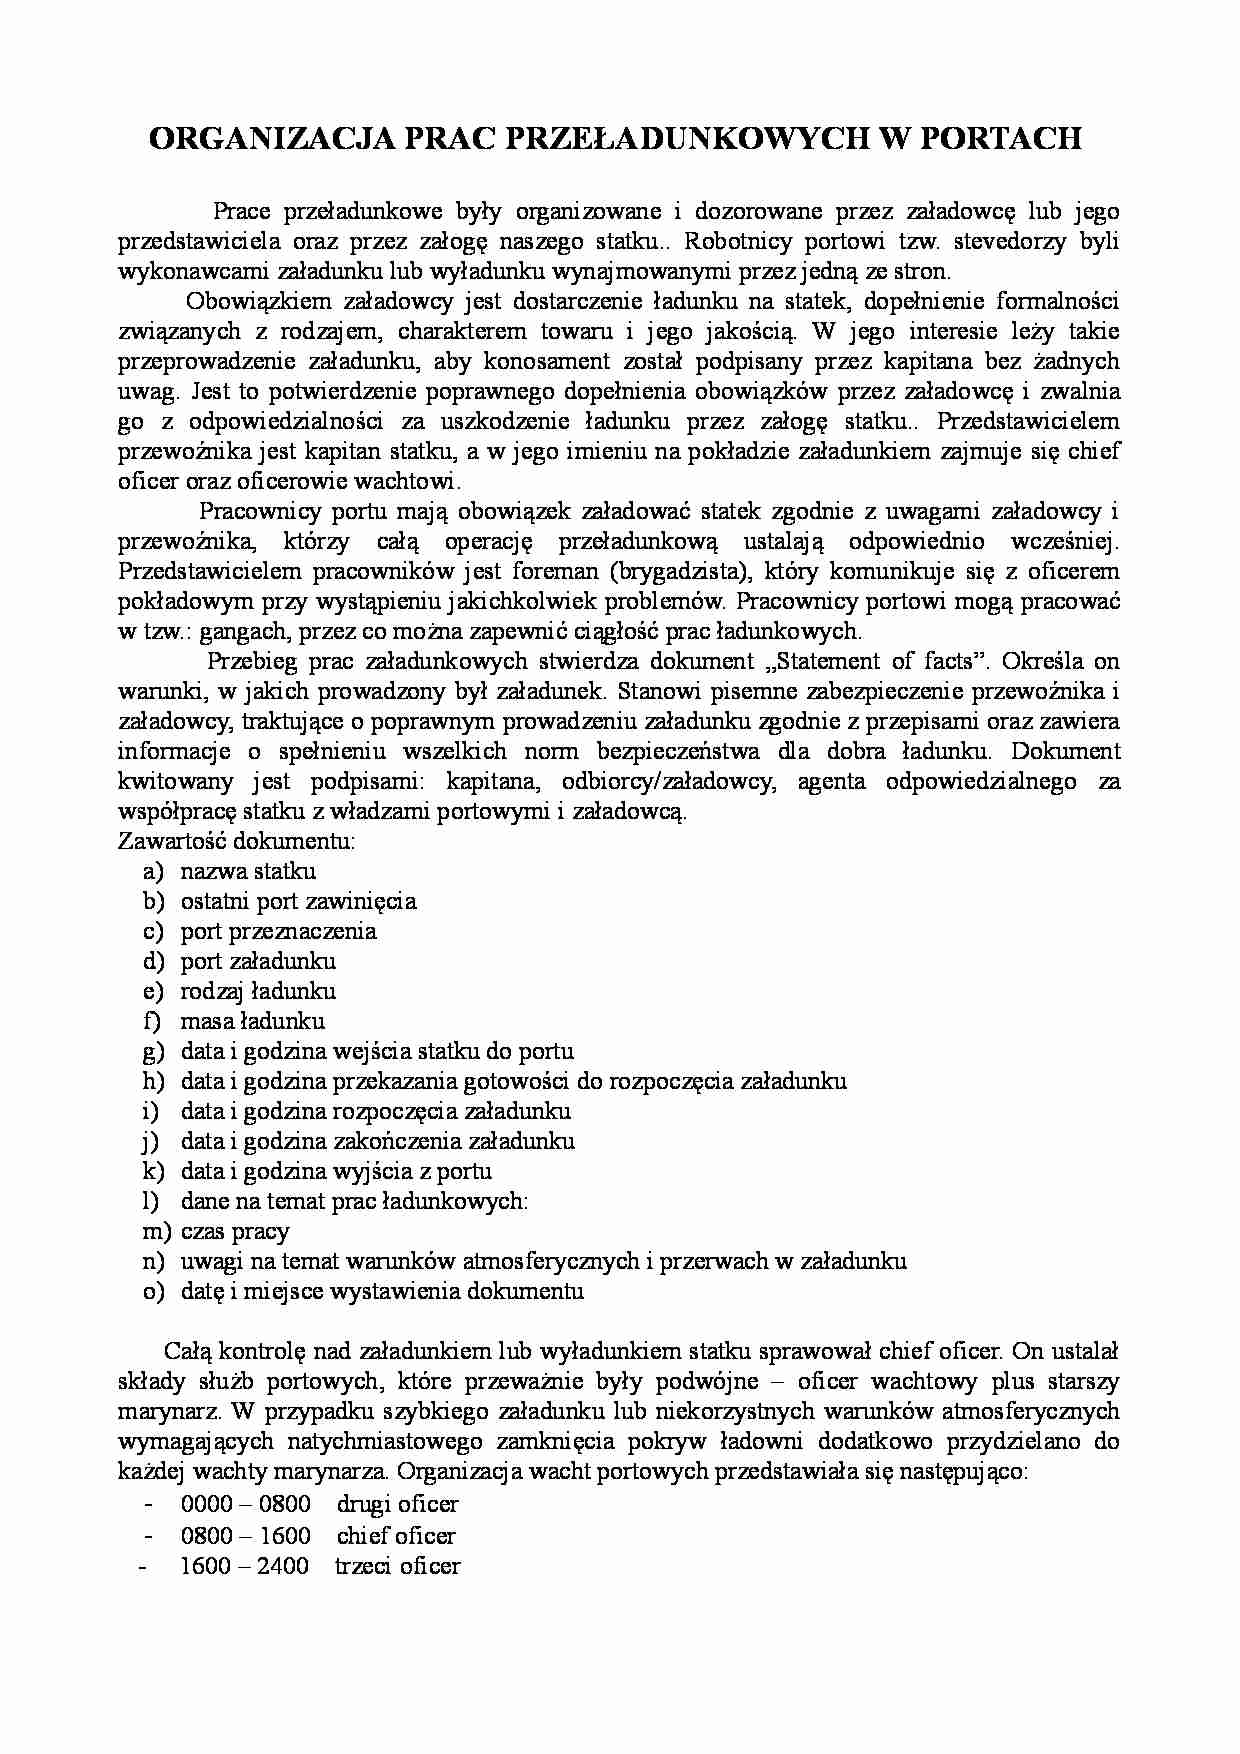 Organizacja prac przeładunkowych w portach - Masowiec - strona 1